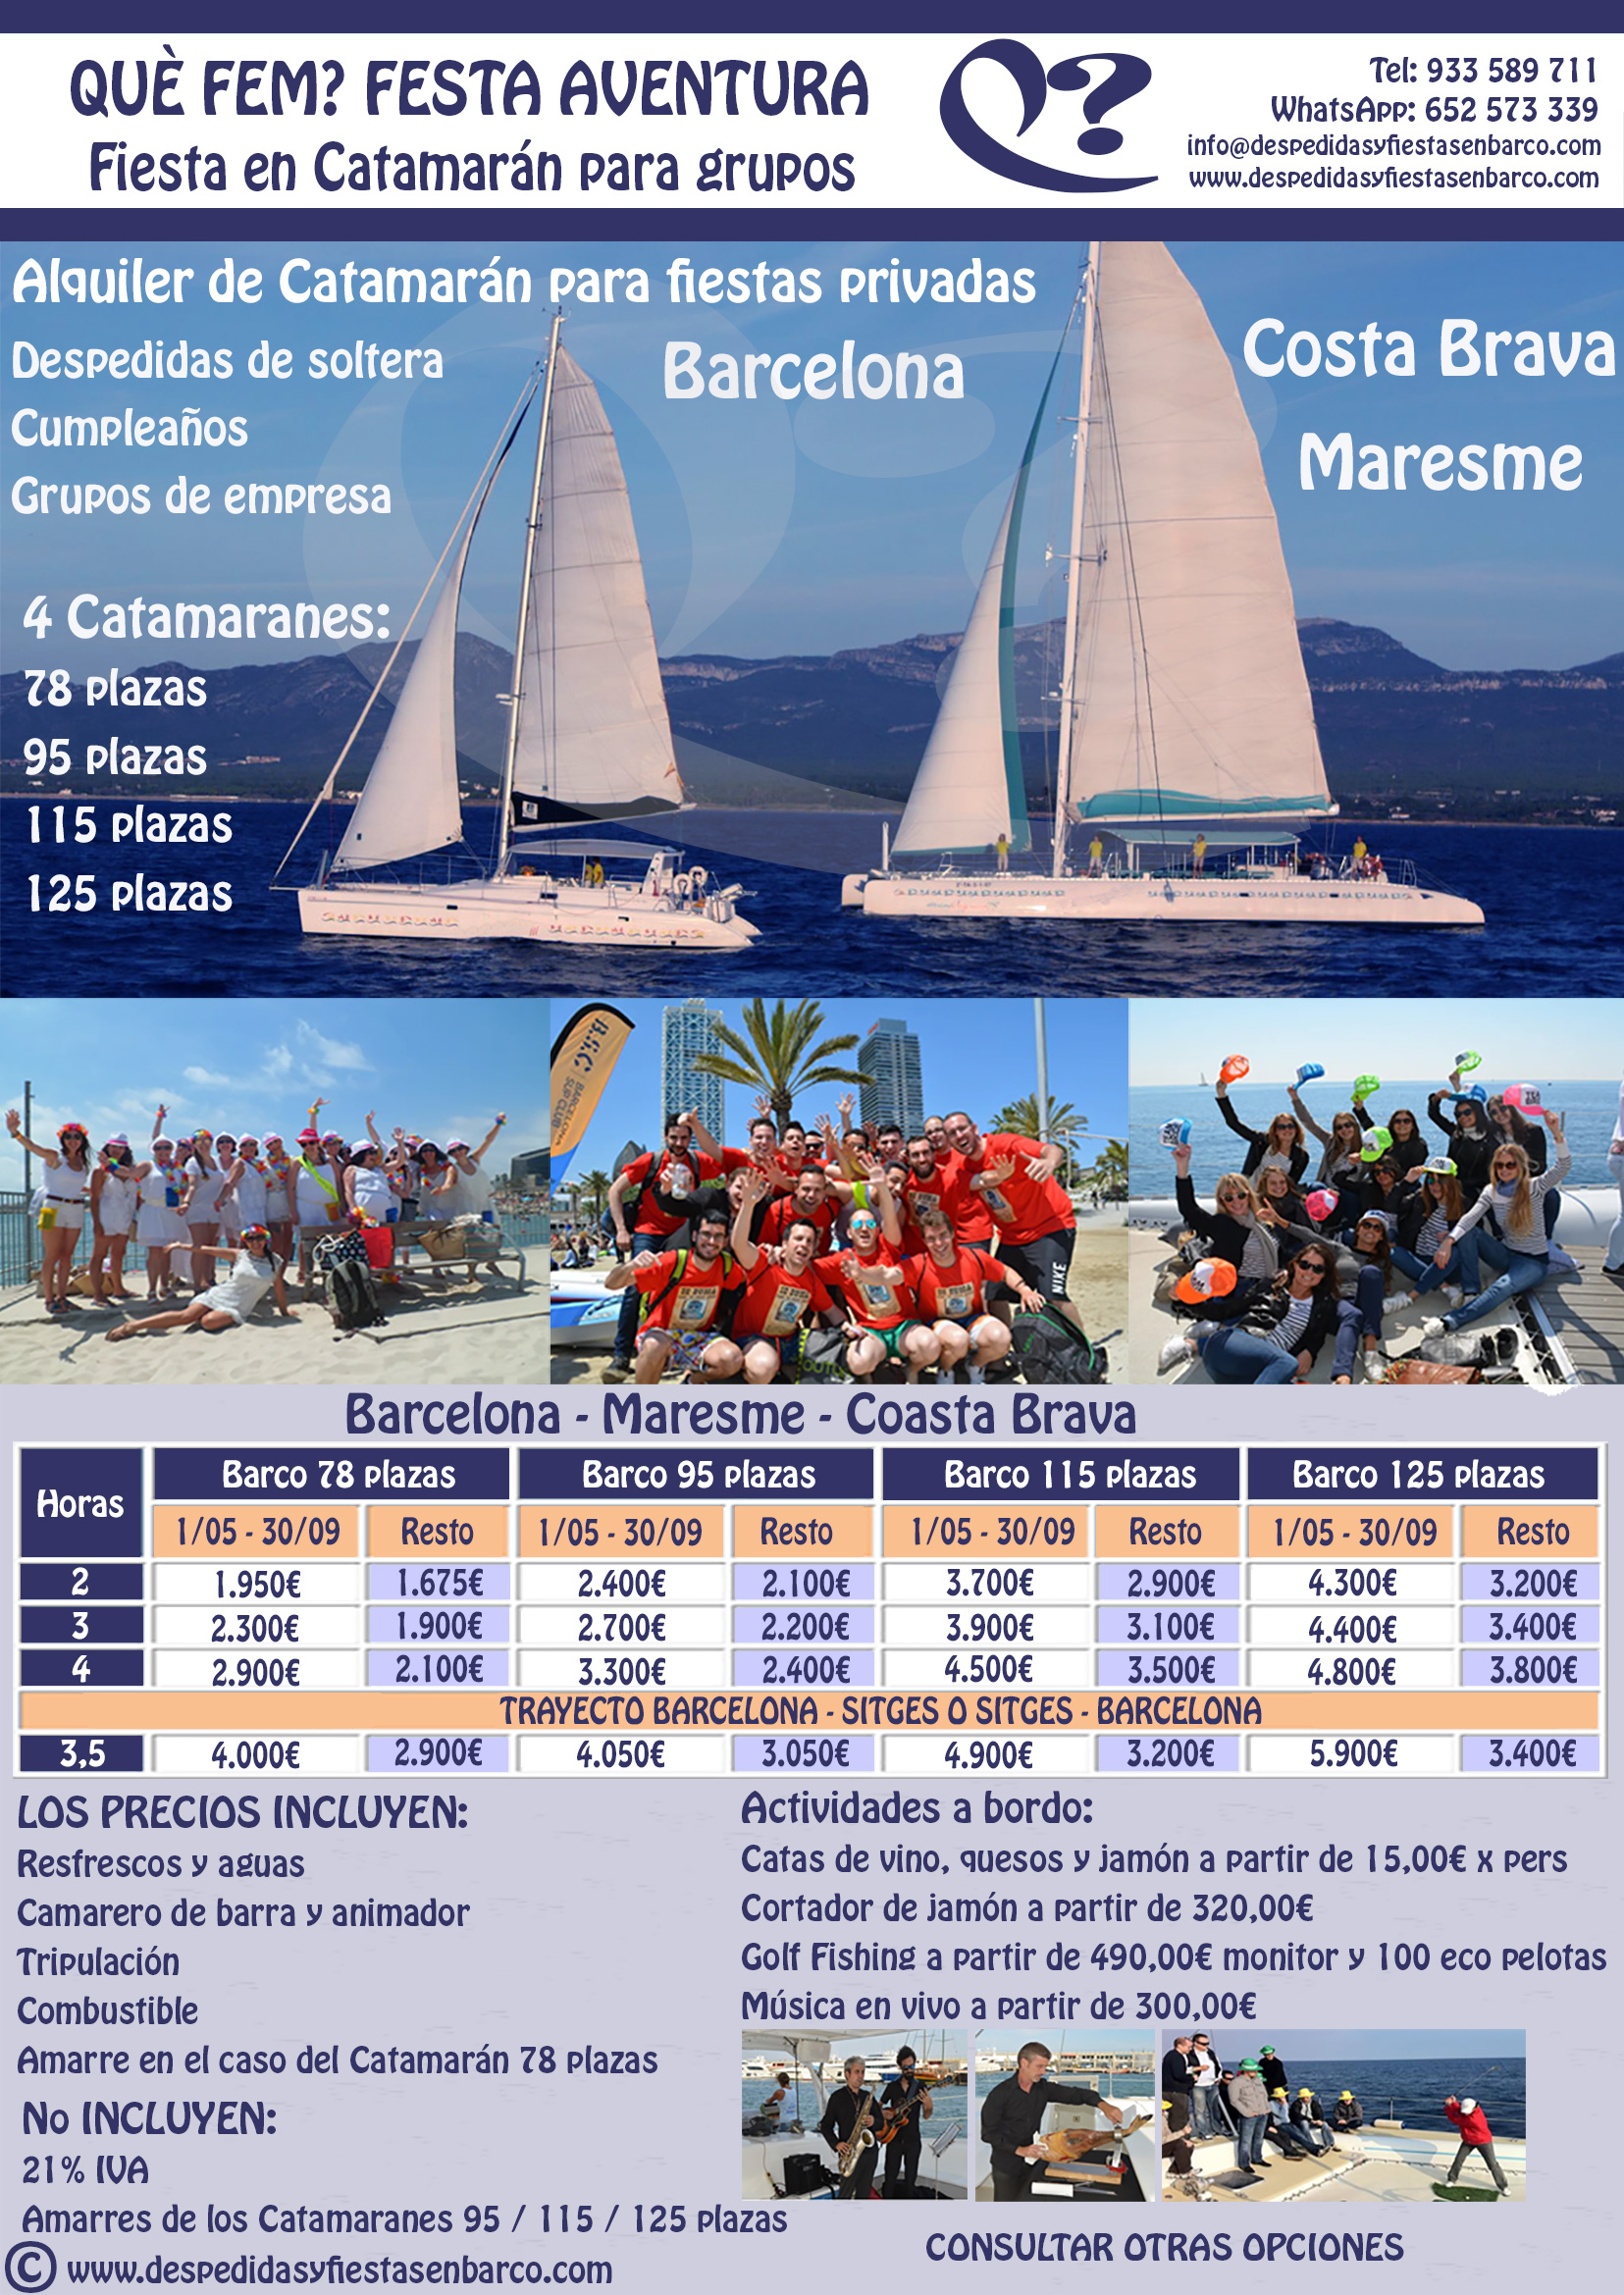 Alquiler de Barcos tipo Catamarán para fiestas privadas en Barcelona